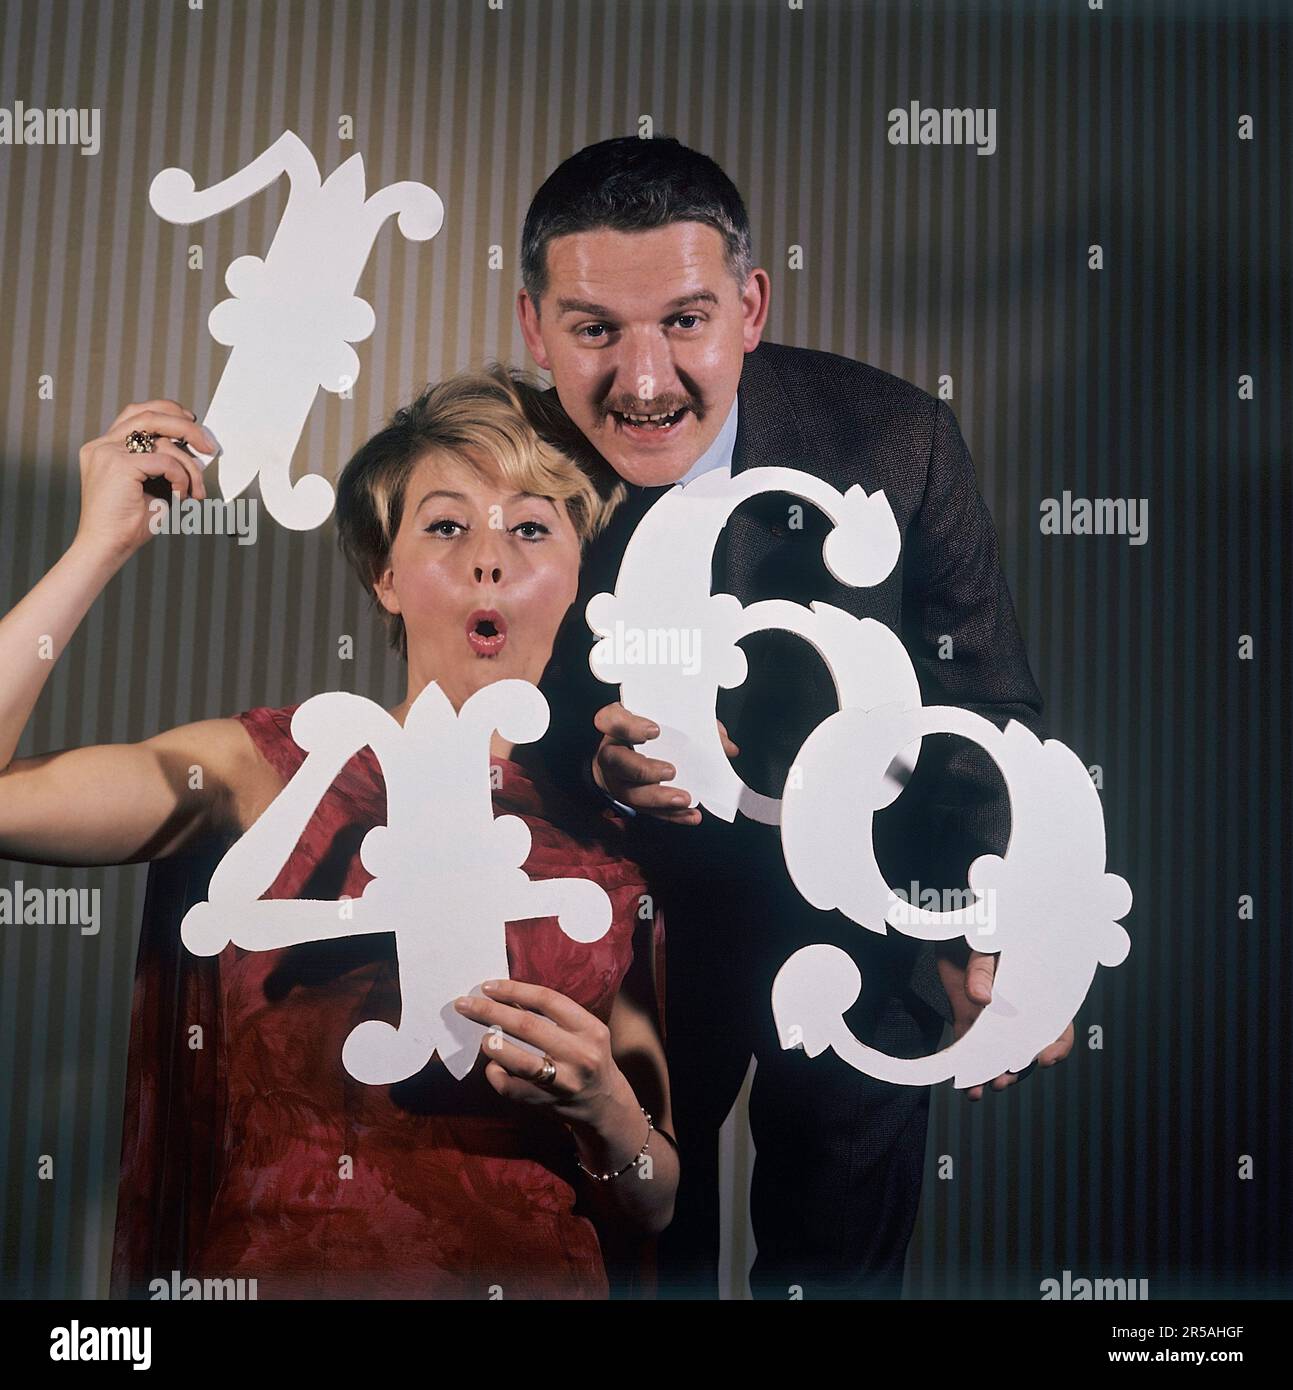 Spaß mit Zahlen in den 1960er. Eine Frau und ein Mann halten verschiedene Nummern in den Händen 1,4,6 und 9. Unklar ist, was der Zweck ist, abgesehen von der Vermutung, dass sie versuchen, sie als Jahreszahlen zusammenzufassen. Es gibt Schauspieler/Sänger Monica Zetterlund und Hans Alfredson, sehr gut bekannte schwedische Künstler. Schweden 1964 Stockfoto